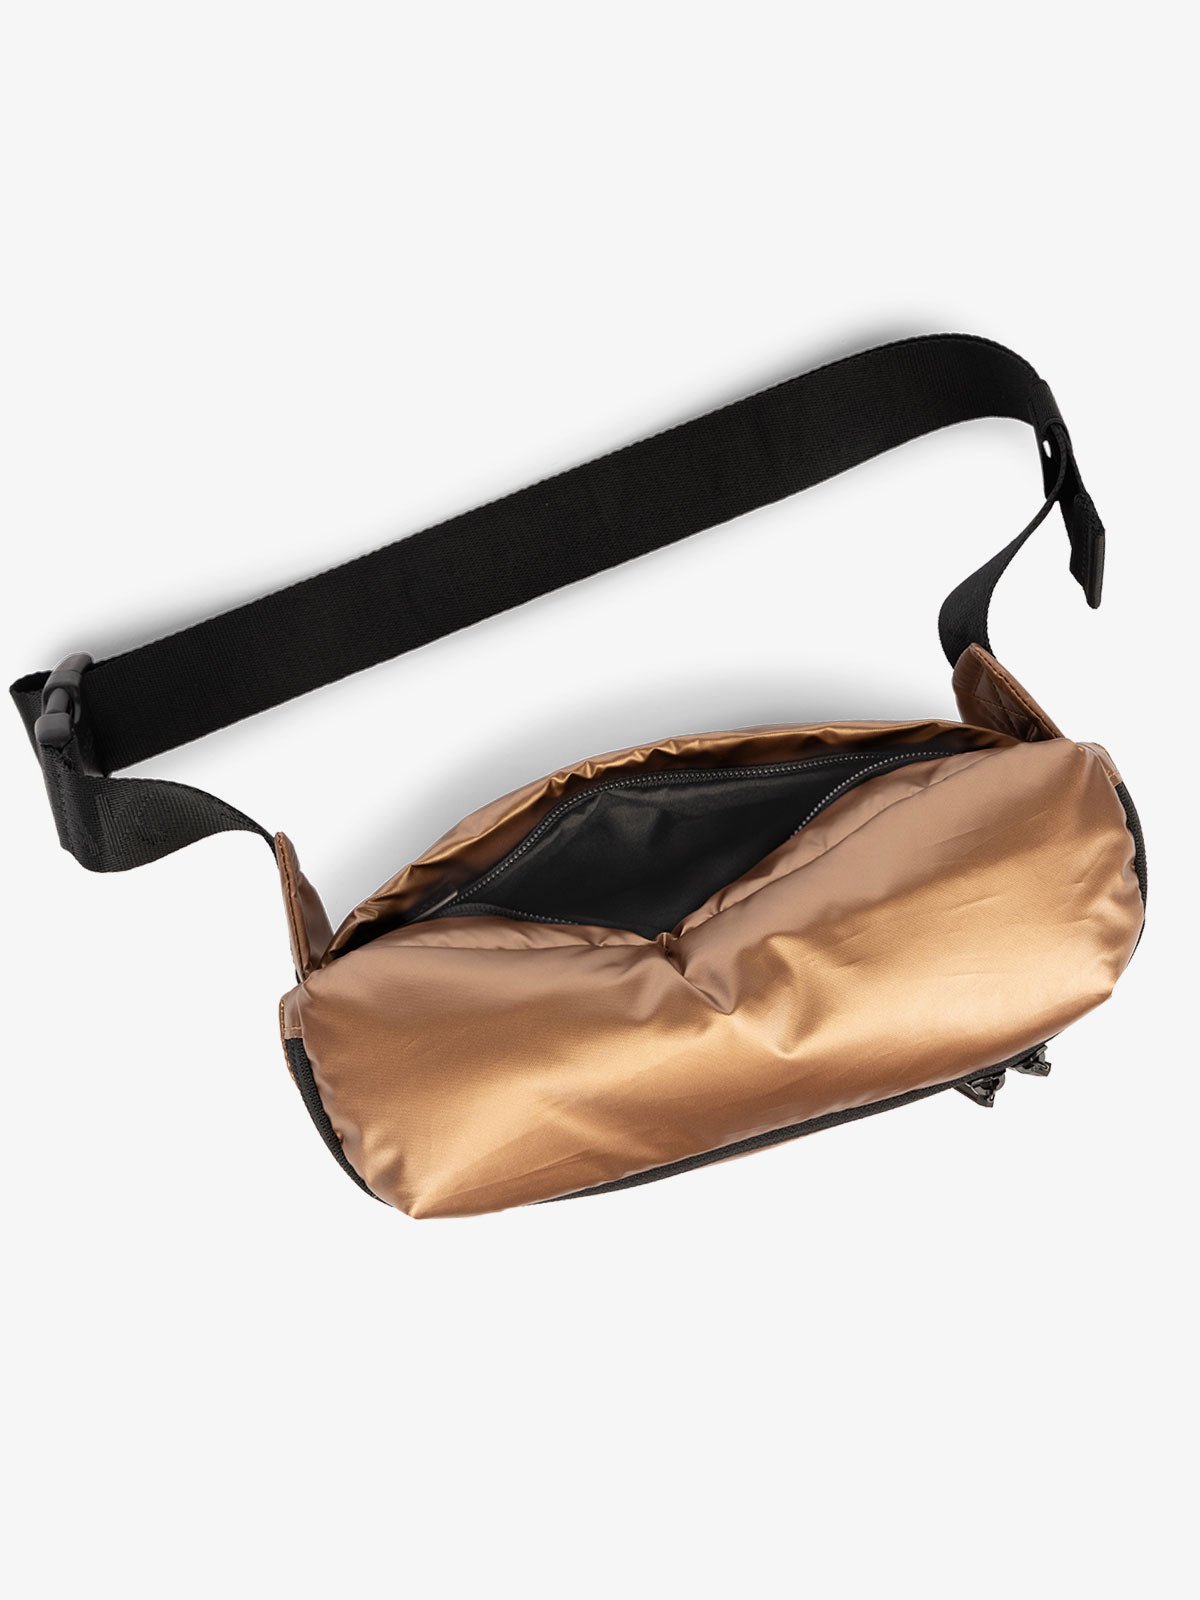 CALPAK Luka Belt Bag with adjustable strap and hidden back pocket in metallic copper